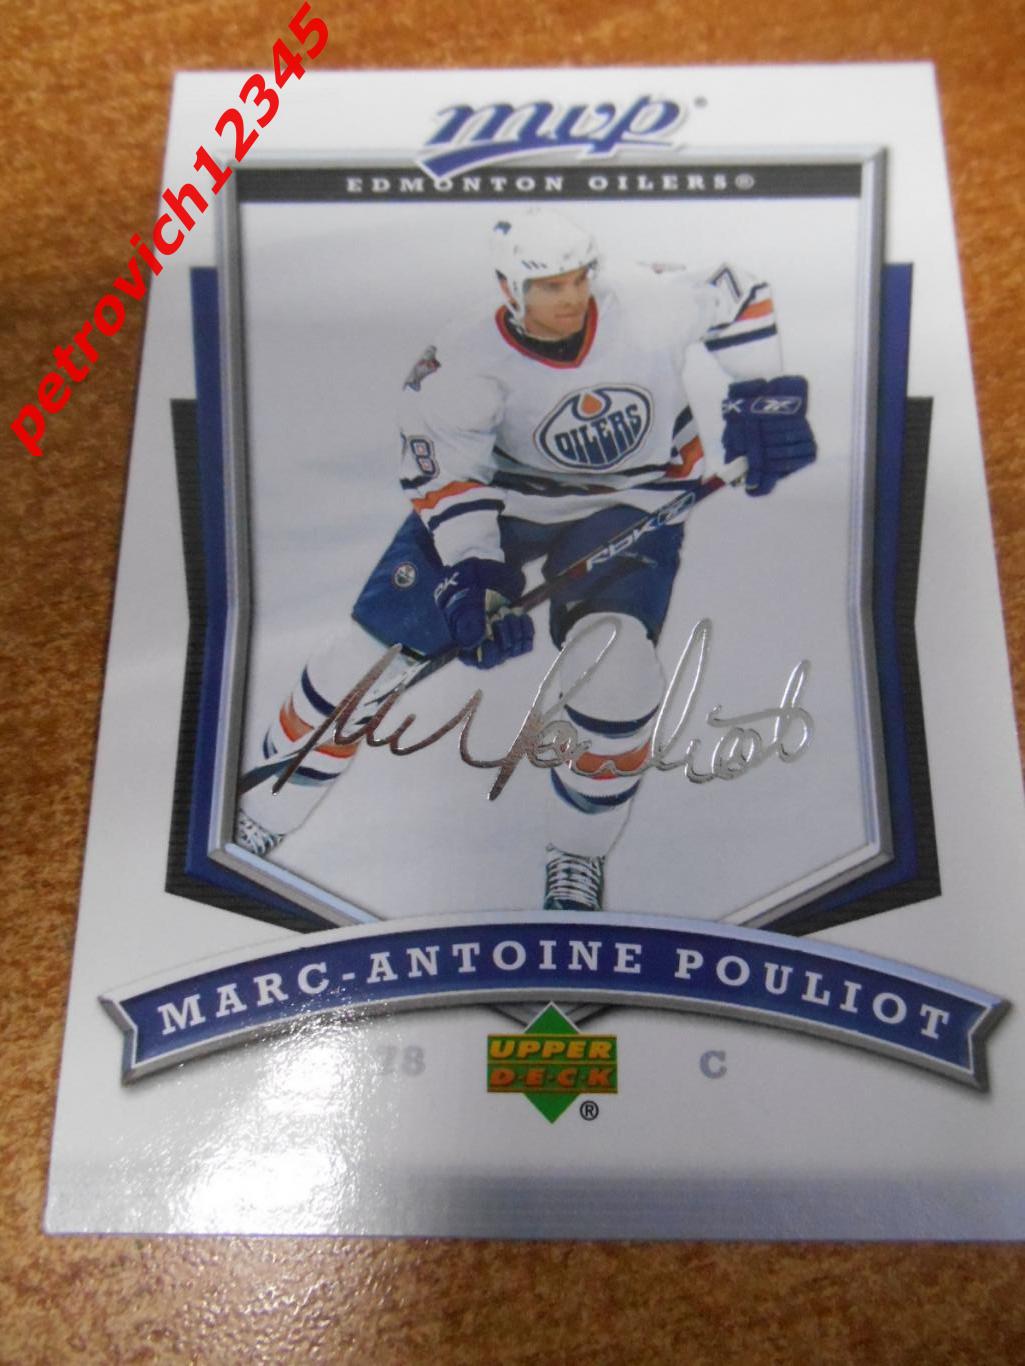 хоккей.карточка - 182 - Marc-Antoine Pouliot - Edmonton Oilers